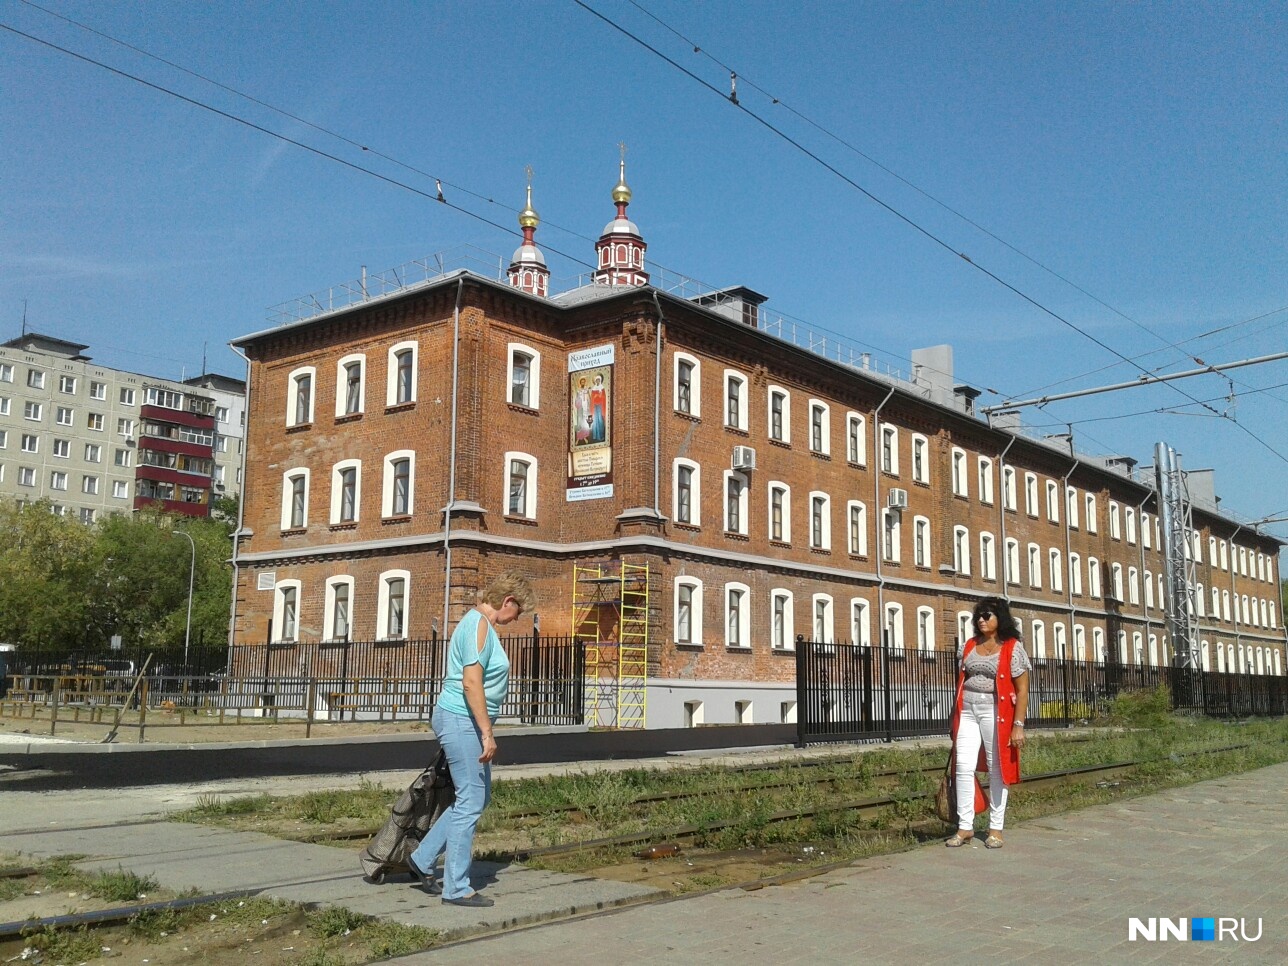 Льнопрядильная фабрика Нижний Новгород